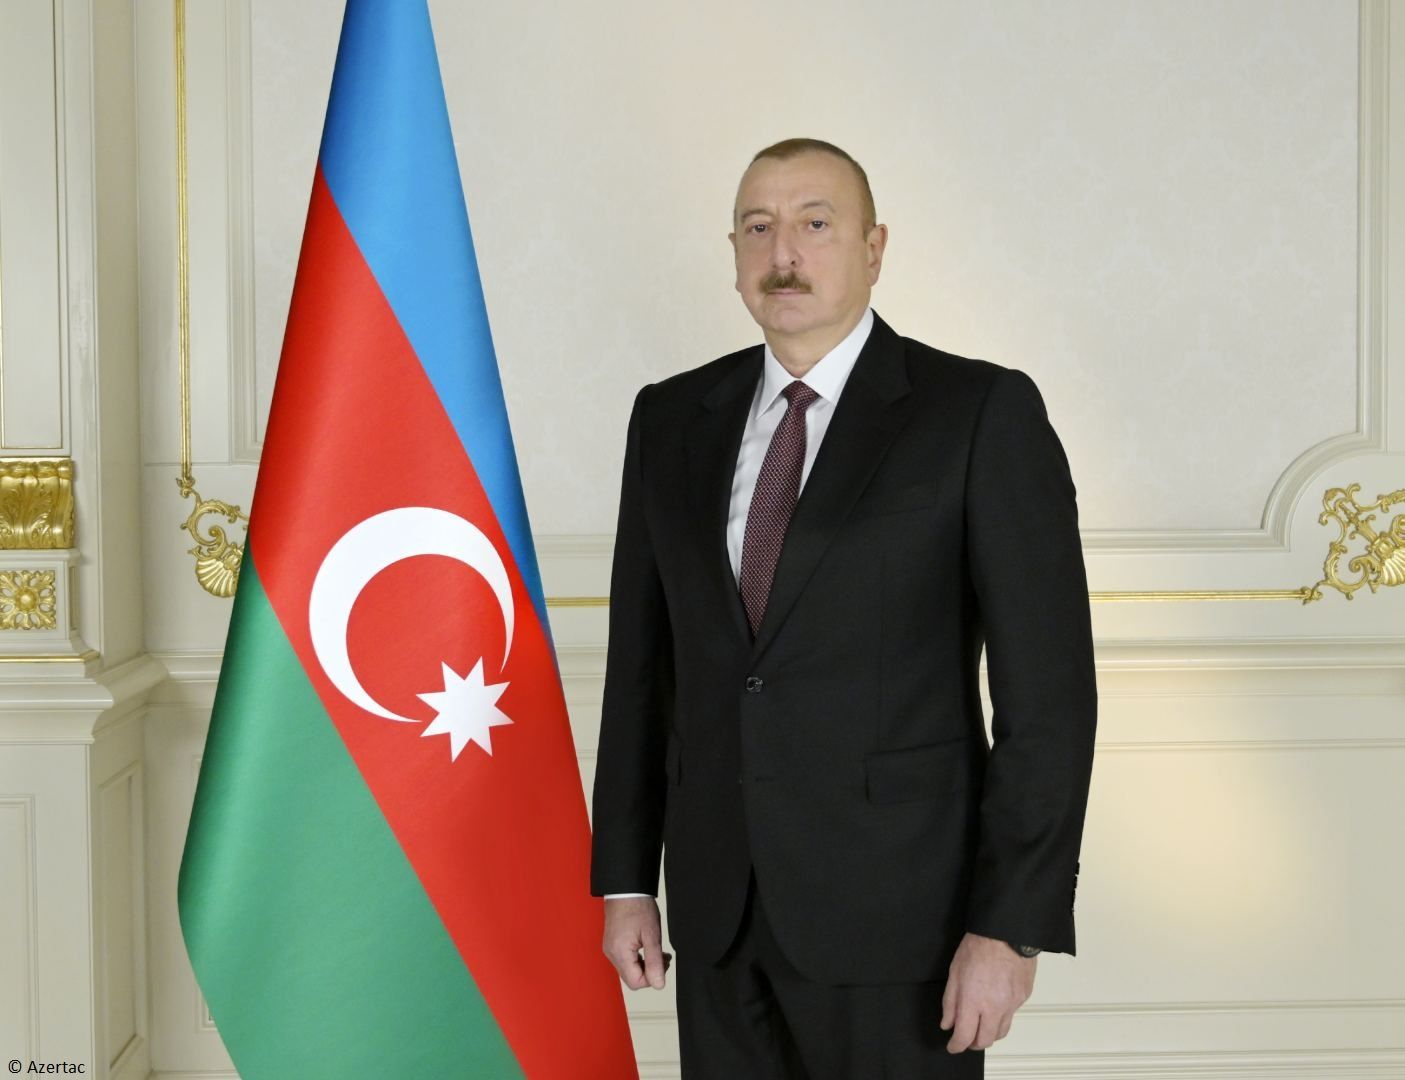 Le président Ilham Aliyev : L’Azerbaïdjan, c’est l’un des rares endroits où l’intolérance ethnique et religieuse, la xénophobie et l’antisémitisme n’existent pas